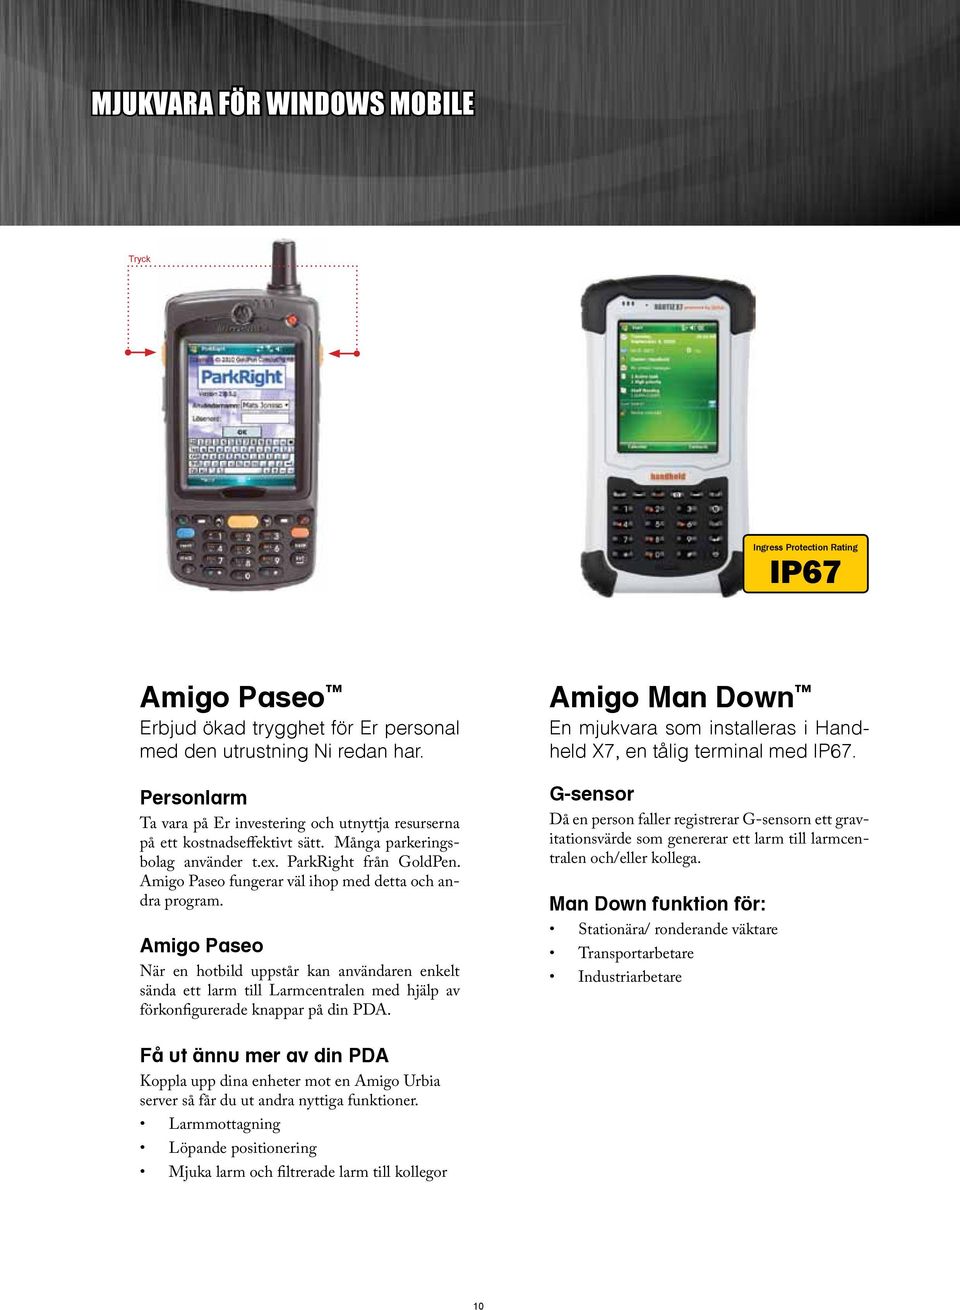 Amigo Paseo fungerar väl ihop med detta och andra program. Amigo Paseo När en hotbild uppstår kan användaren enkelt sända ett larm till Larmcentralen med hjälp av förkonfigurerade knappar på din PDA.